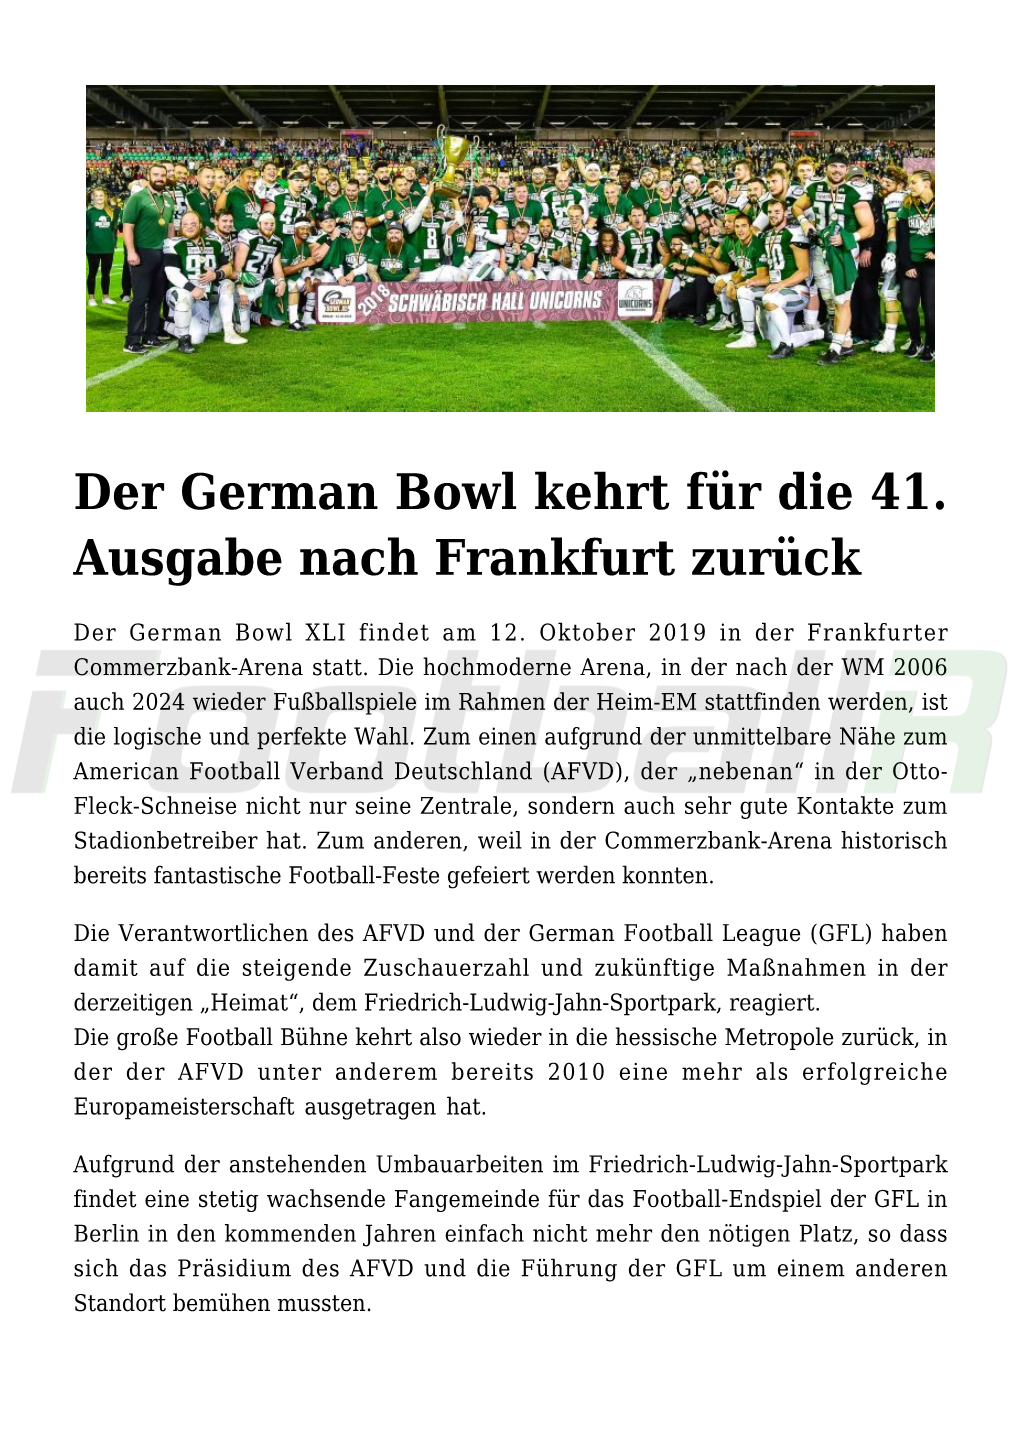 Der German Bowl Kehrt Für Die 41. Ausgabe Nach Frankfurt Zurück